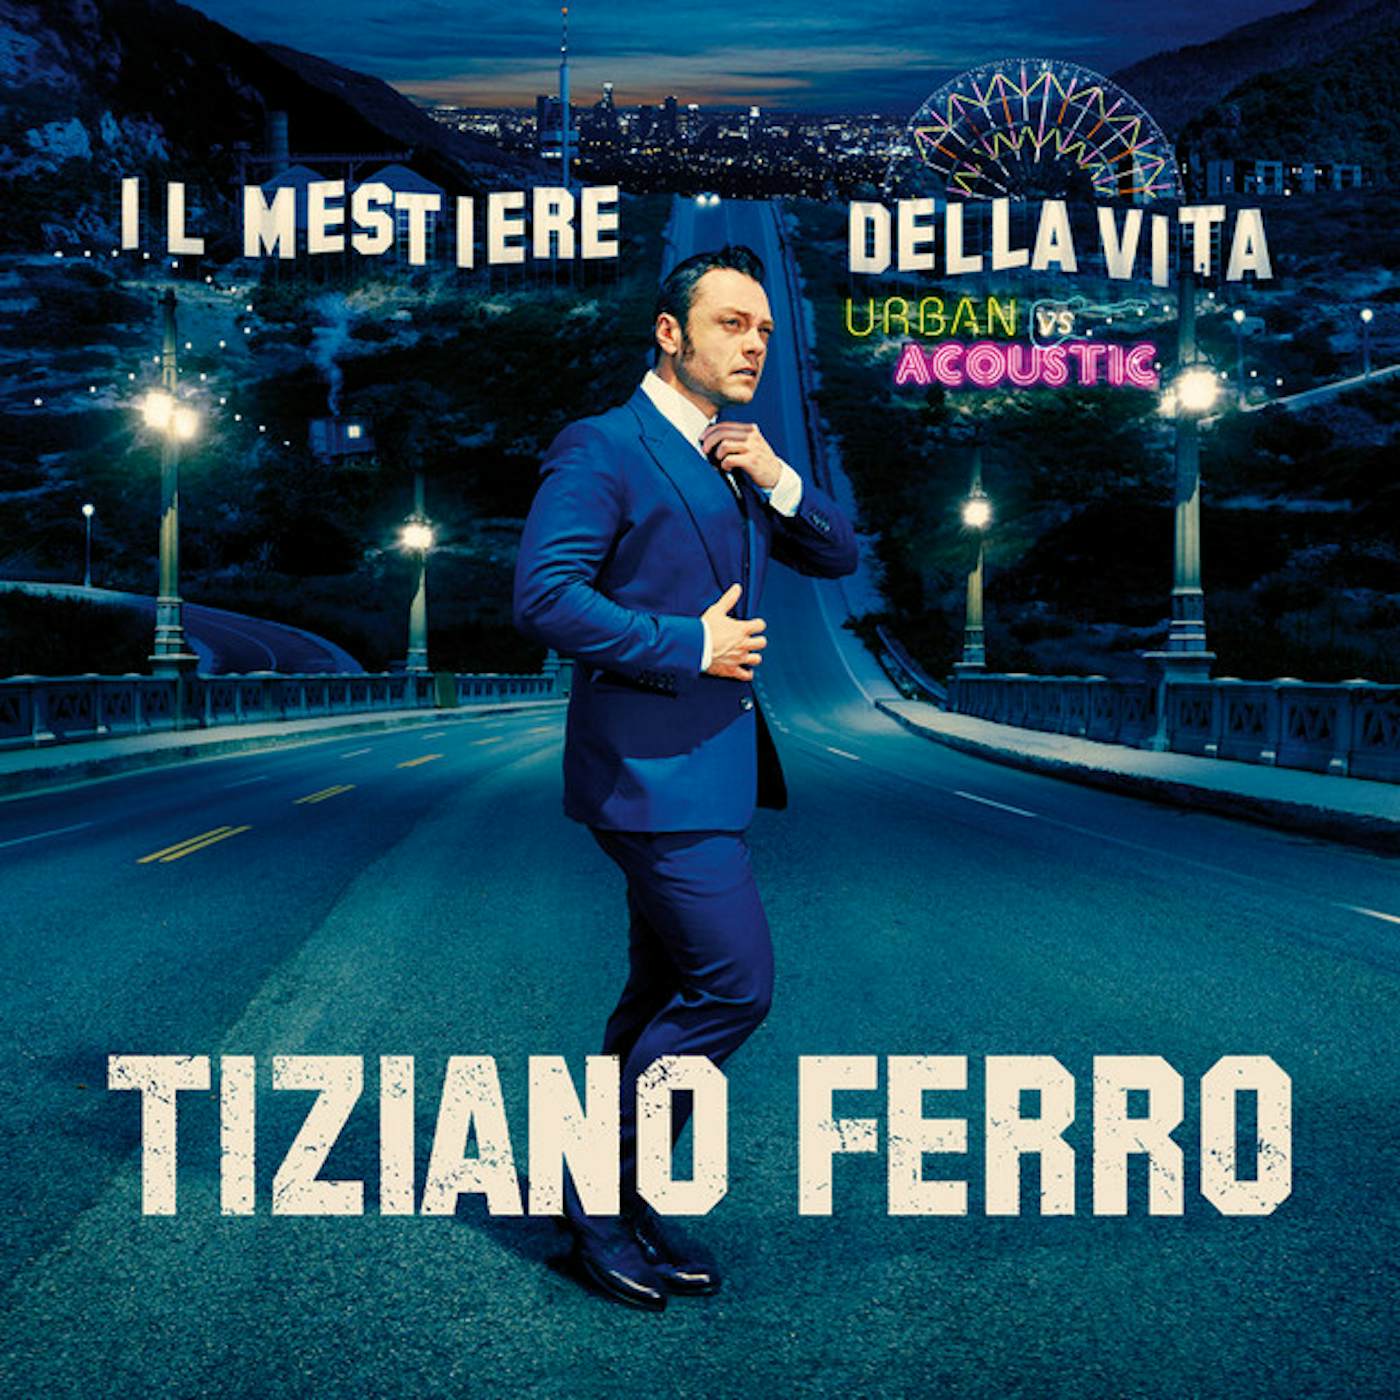 Tiziano Ferro Il Mestiere Della Vita Urban Vs Acoustic Vinyl Record